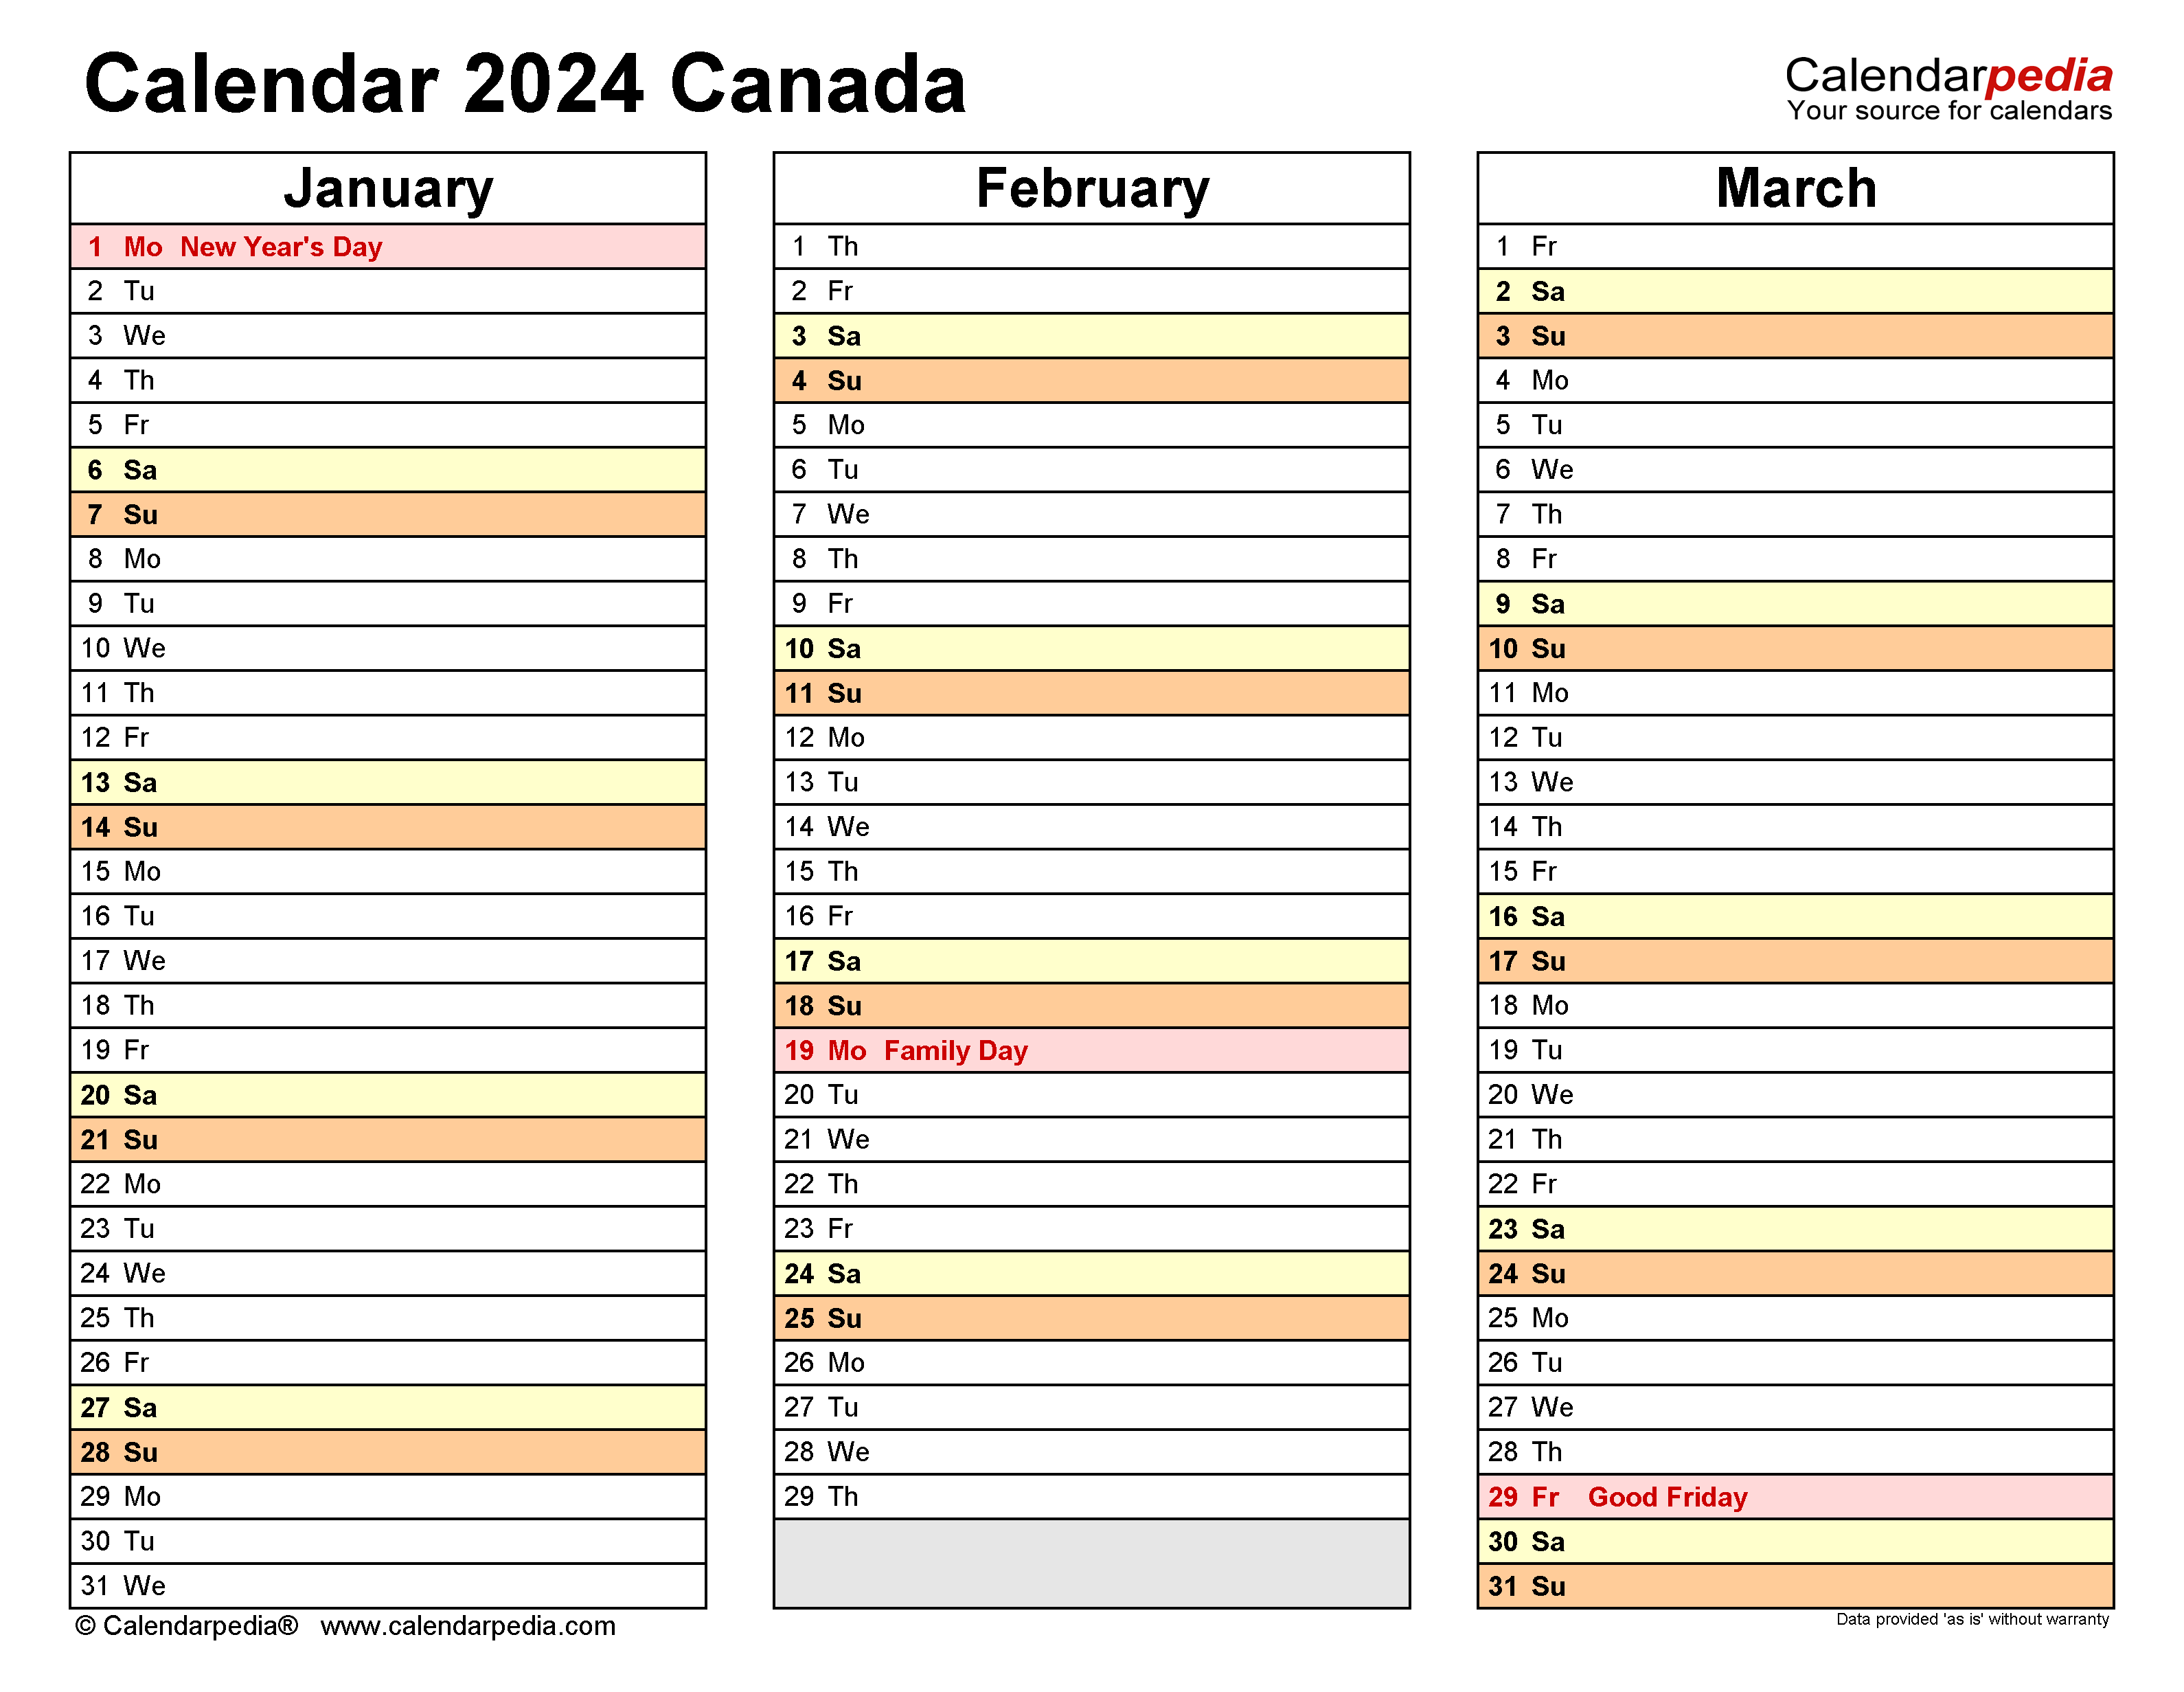 2024 Calendar Canada Printable Pdf 2024 CALENDAR PRINTABLE - Free Printable 2024 Calendar With Holidays Canada Excel